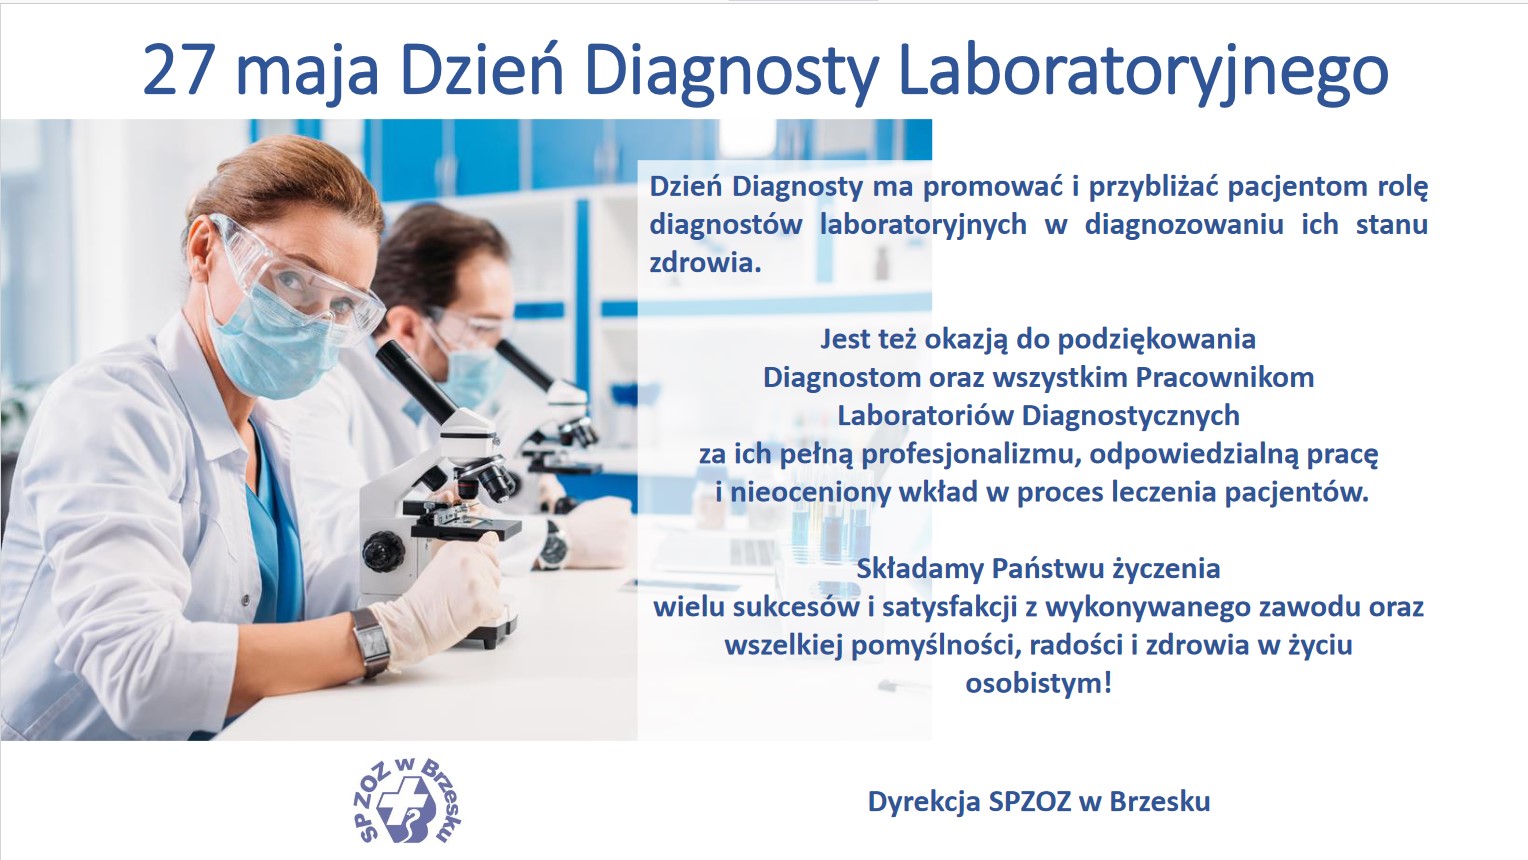 27 maja Dzień Diagnosty Laboratoryjnego